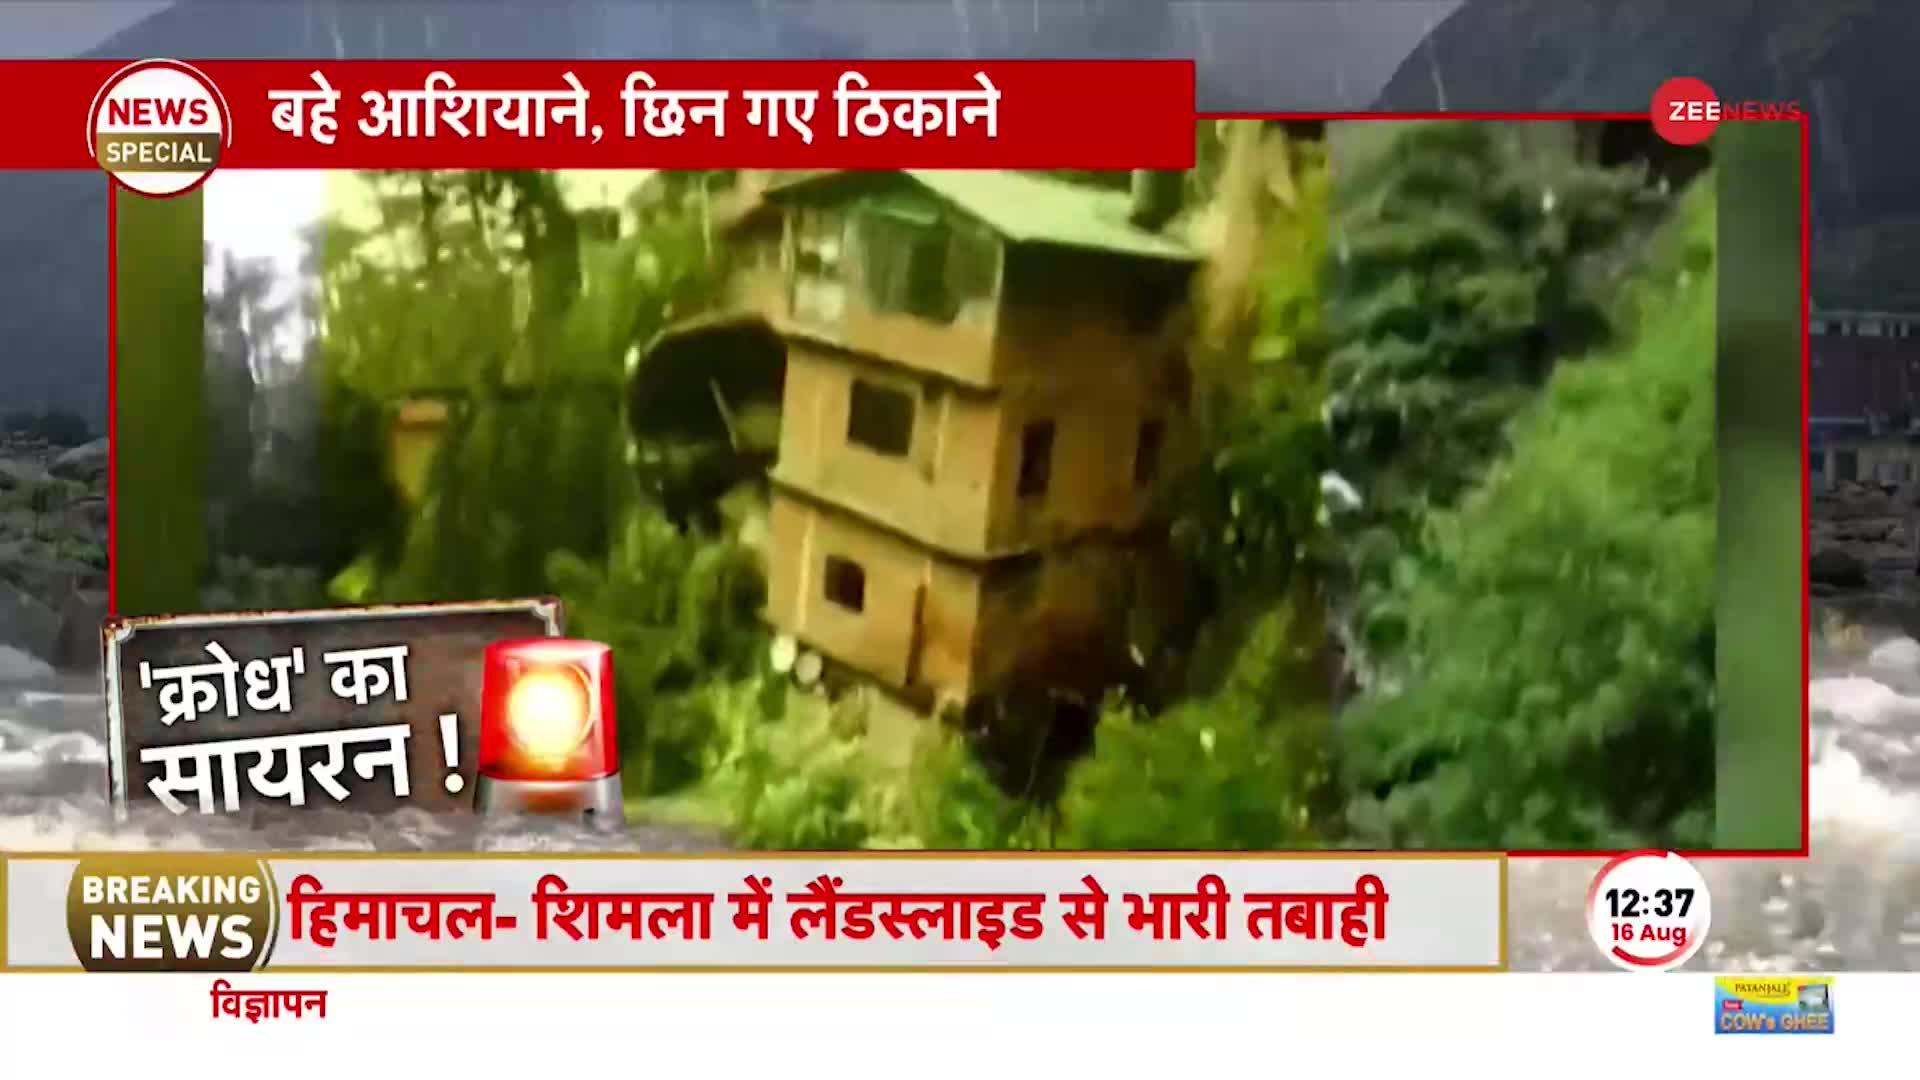 Himachal Pradesh Flood News: मंदिर में पूजा कर रहे थे लोग, अचानक सैलाब आया और सब तबाह